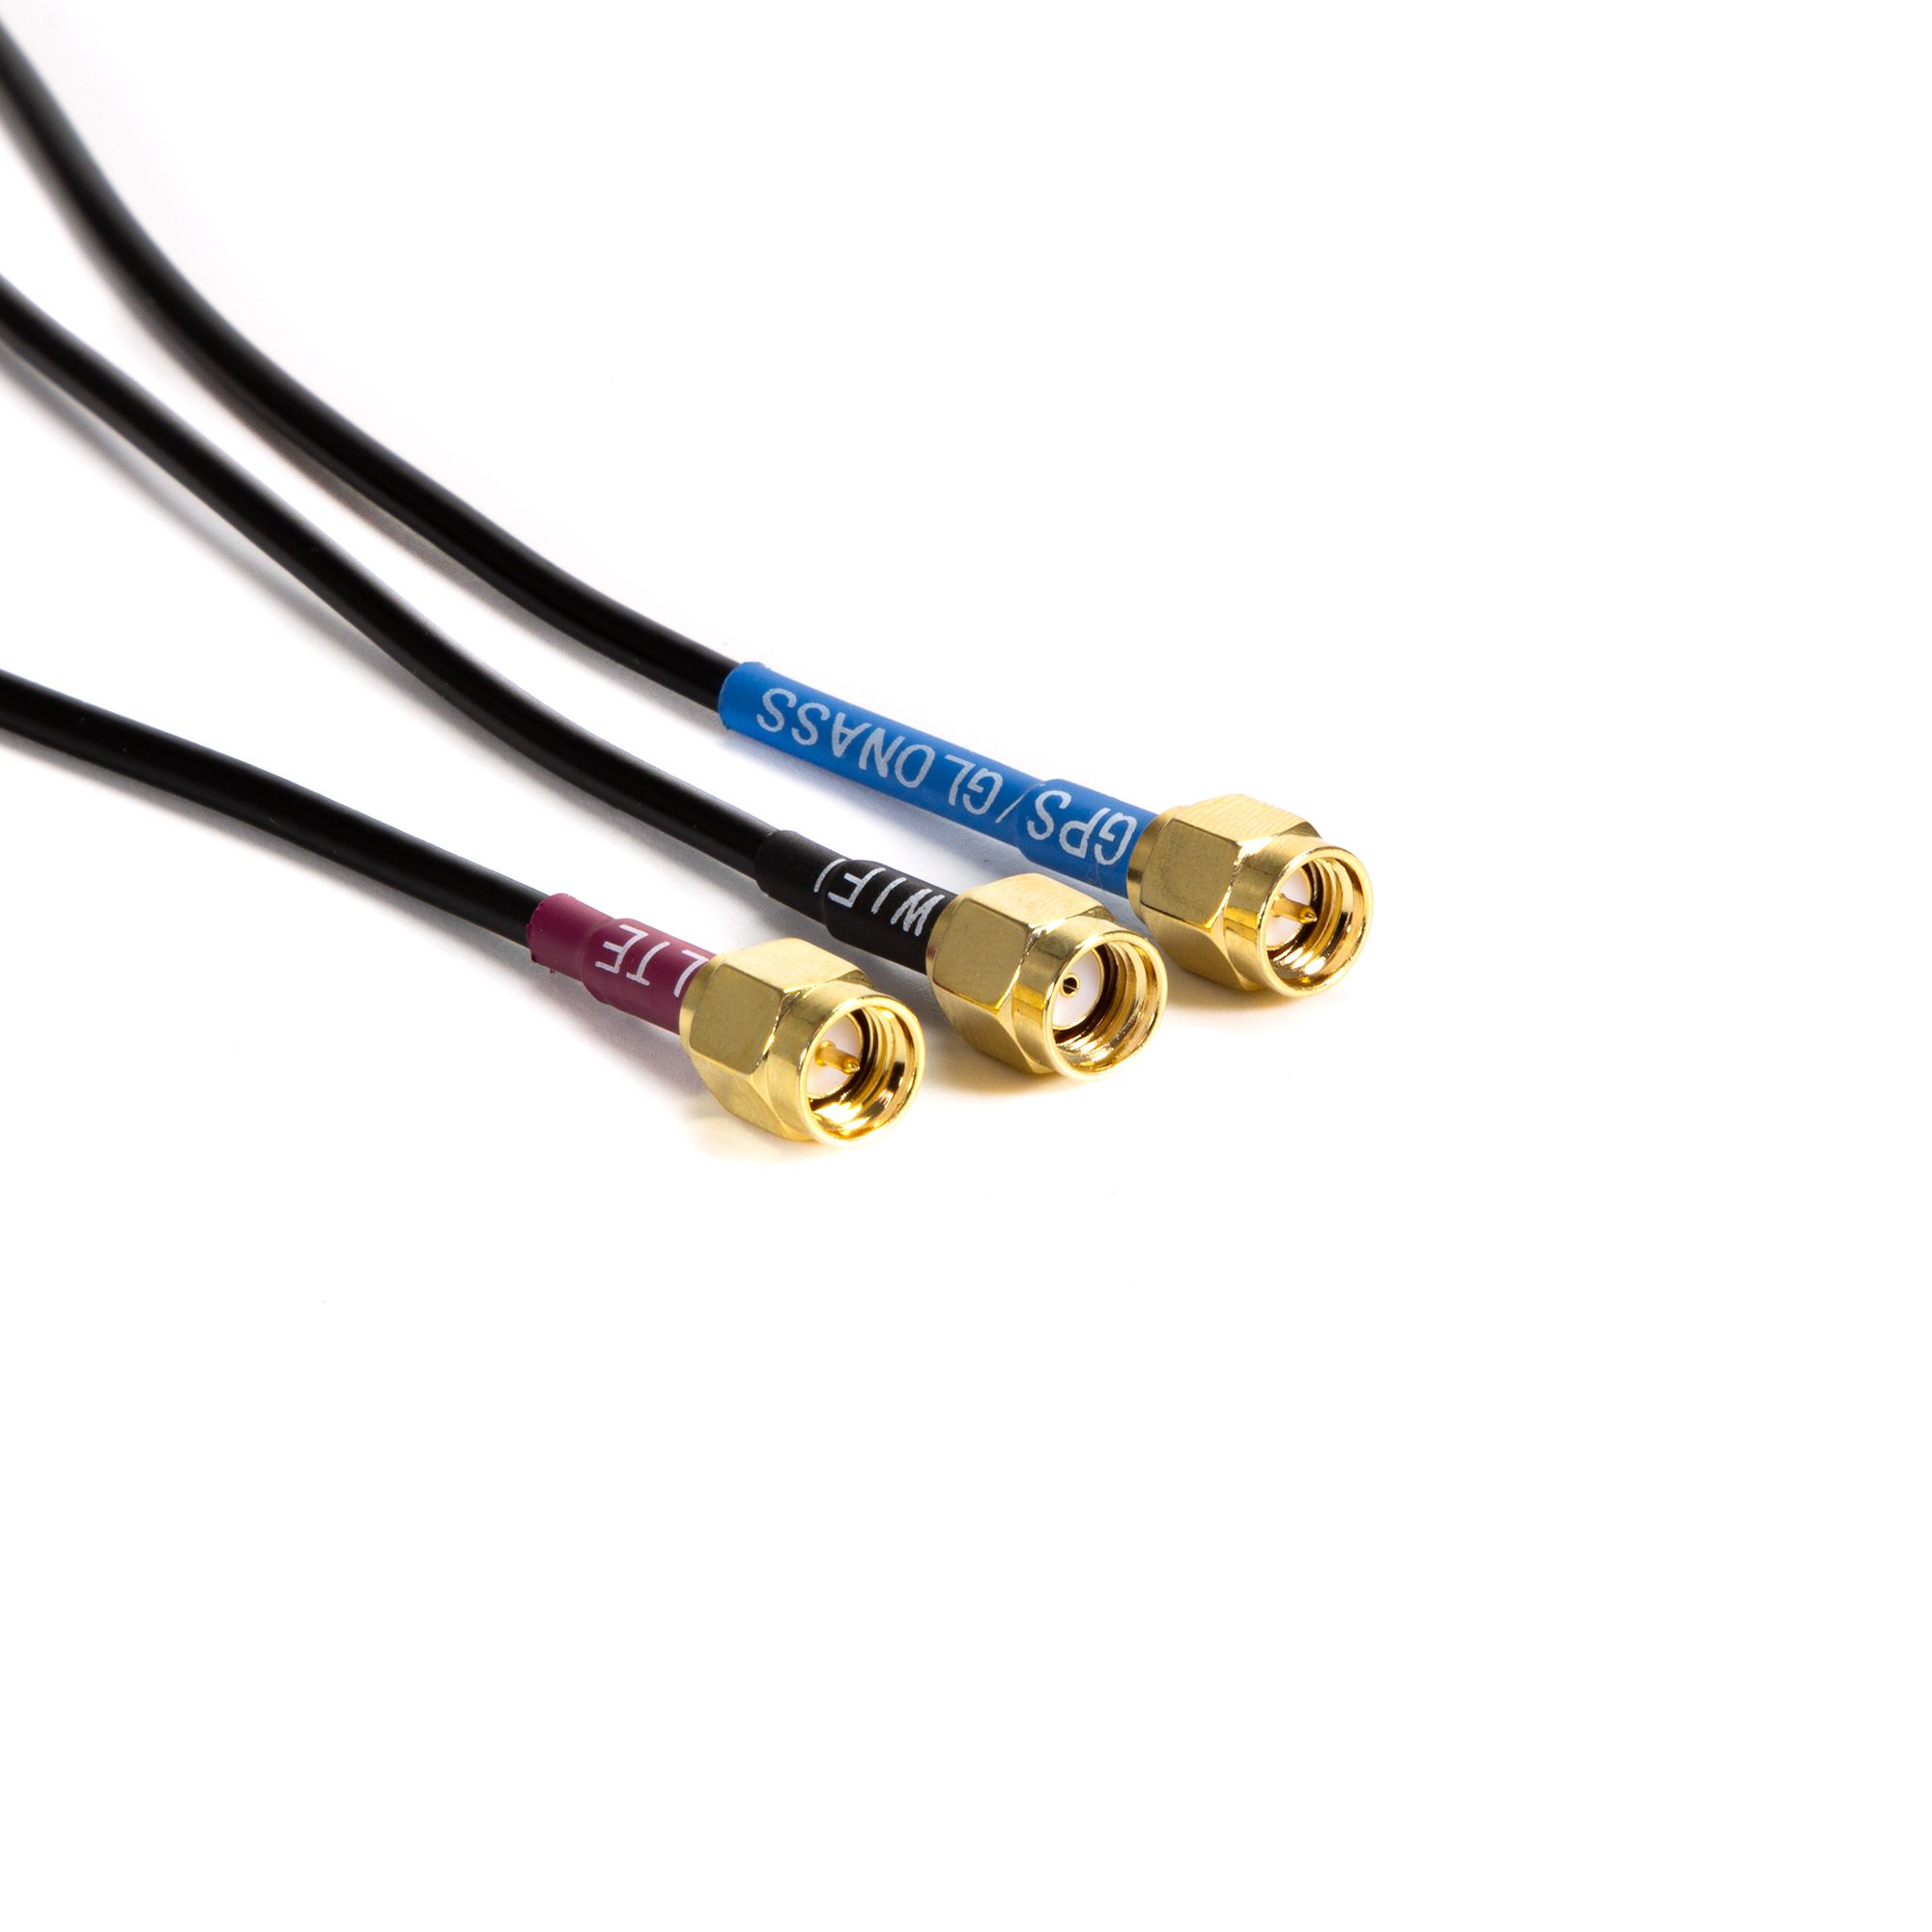 Antena 4G LTE - Antena impermeable 4G LTE, Proveedor de soluciones de  conectores modulares y conectores impermeables durante 35 años